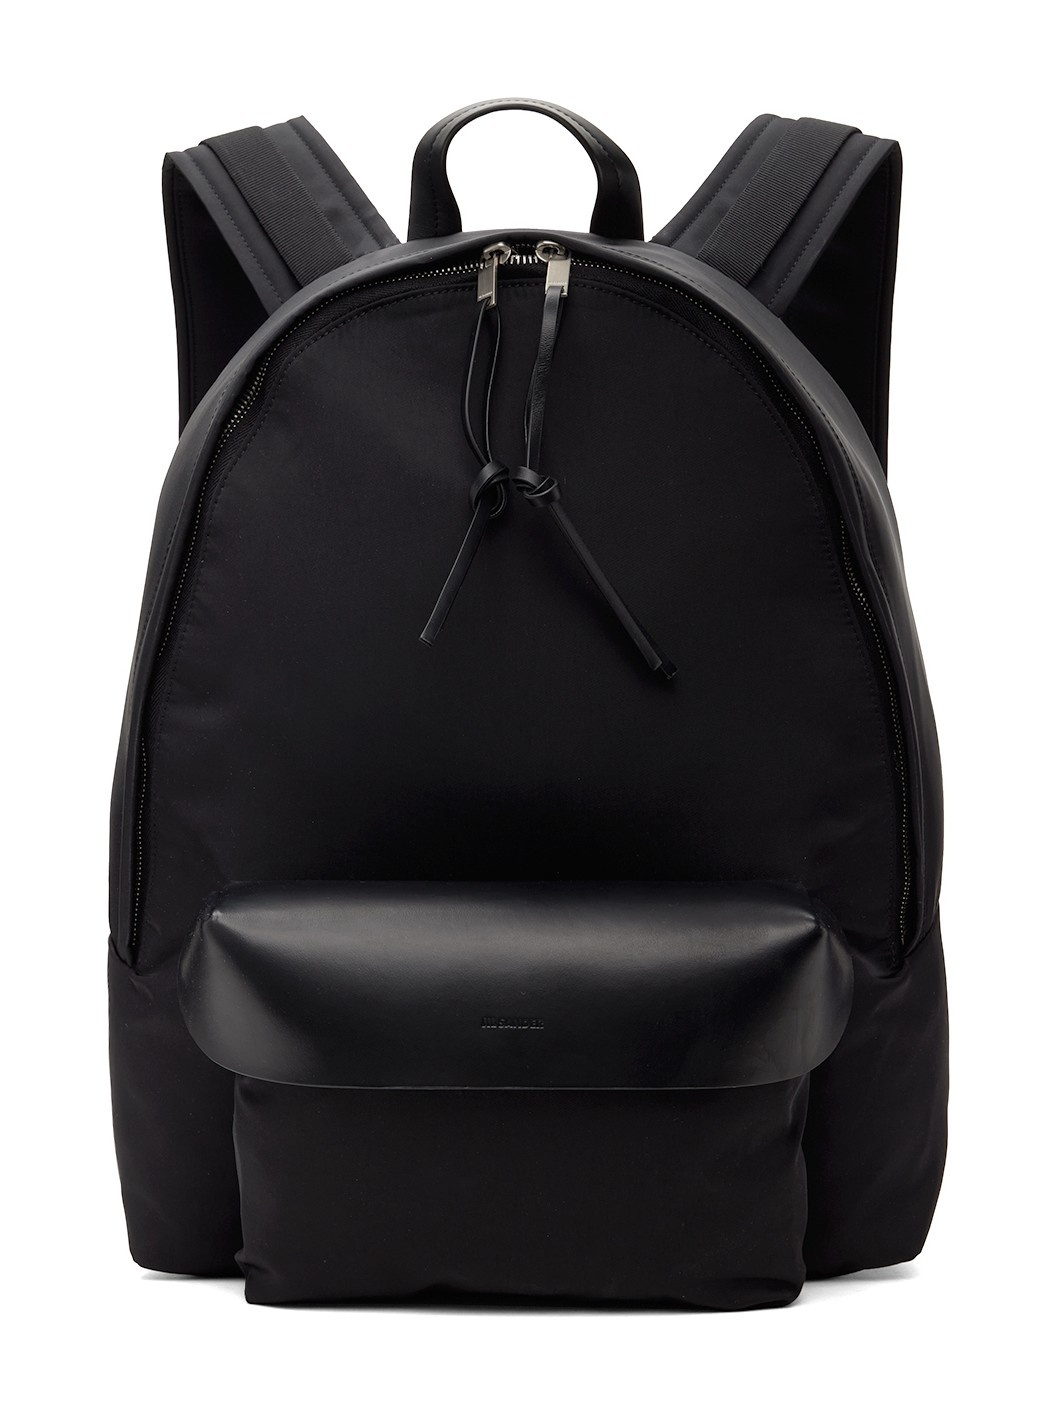 Black Lid Backpack - 1